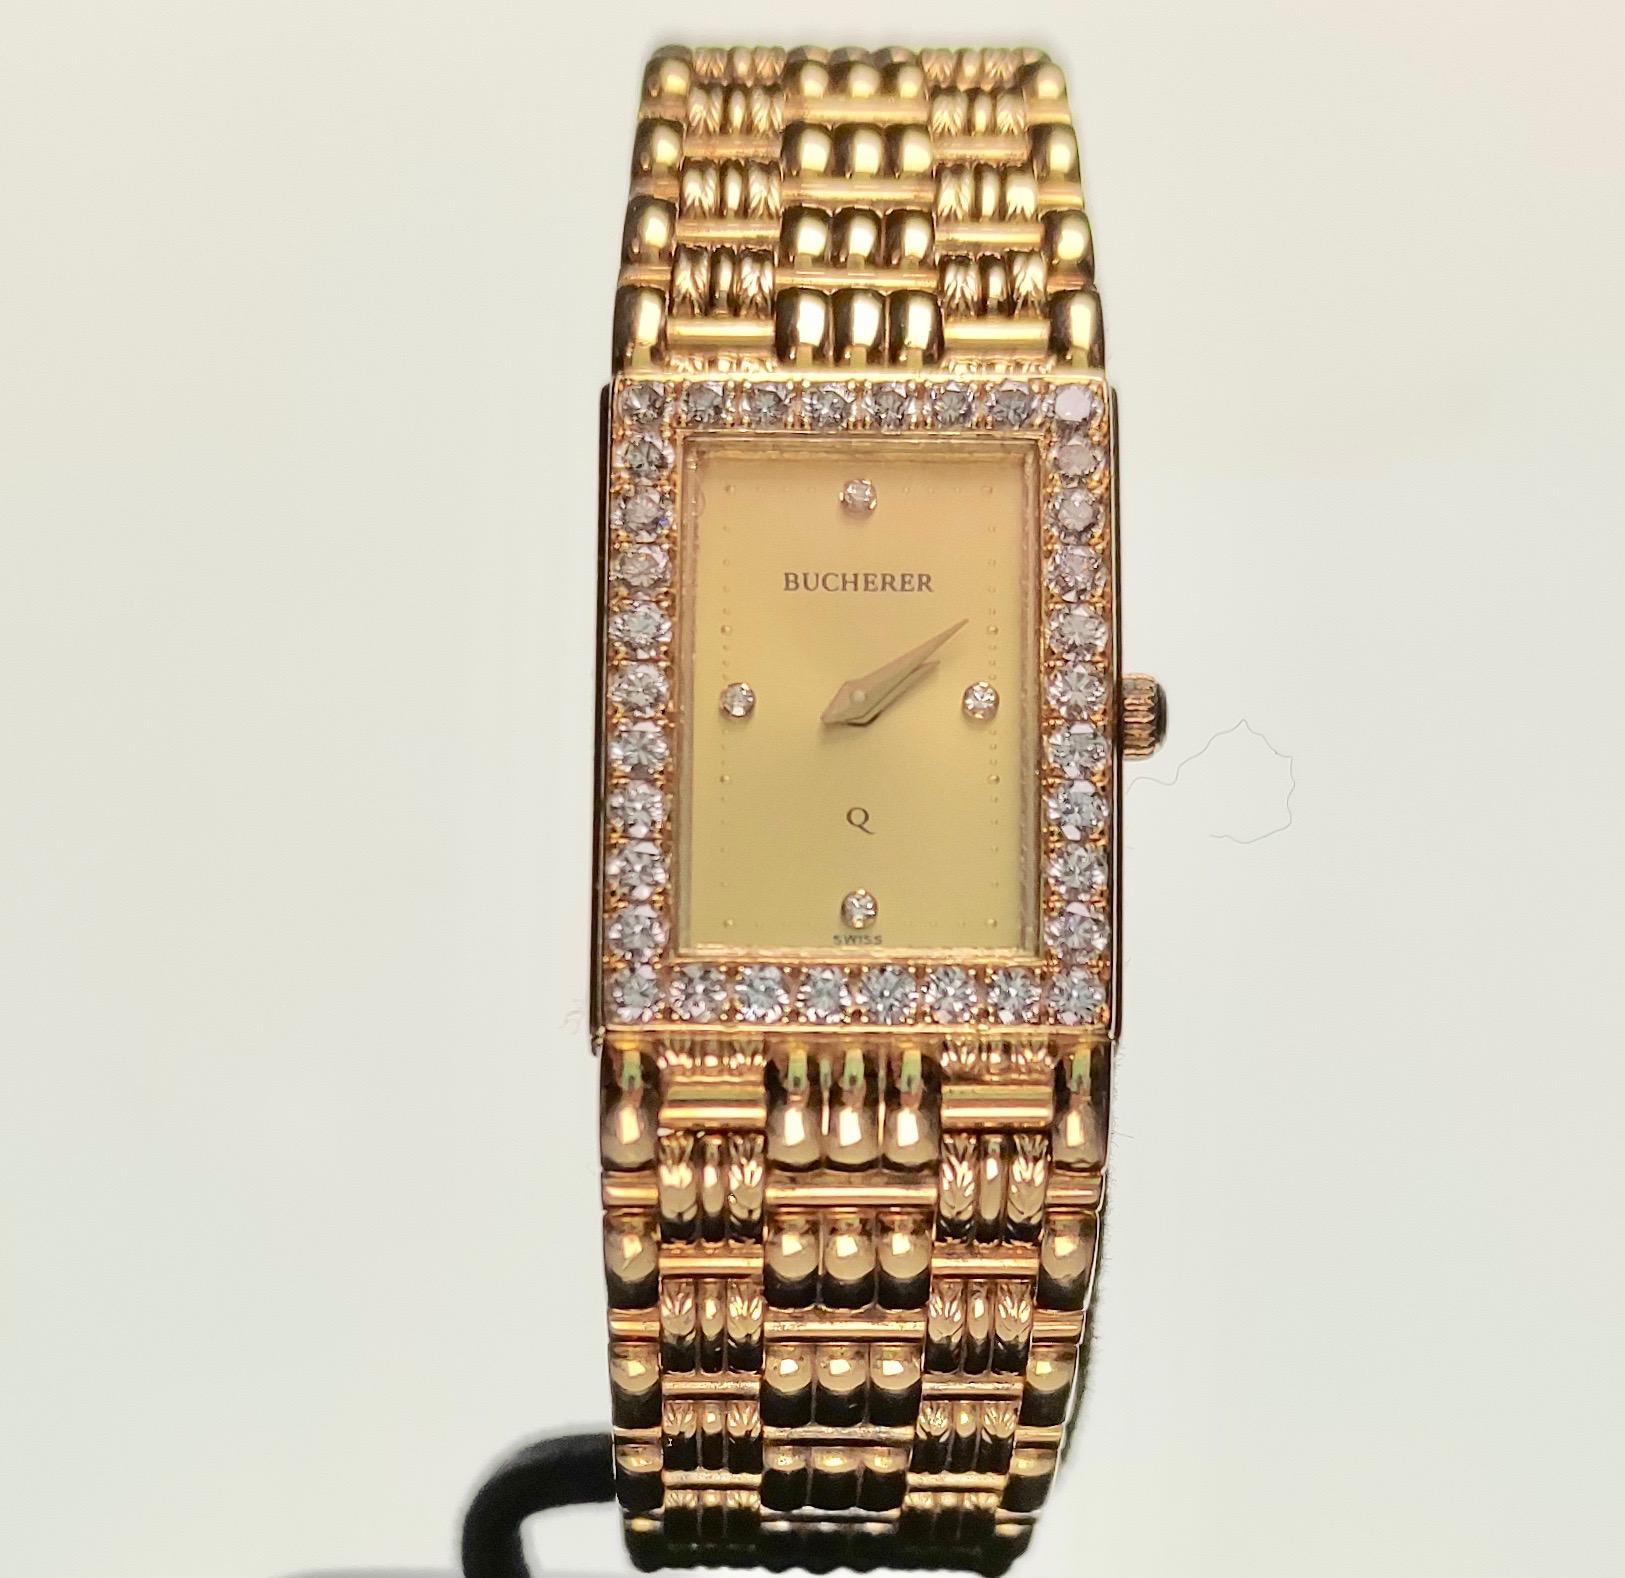 bucherer gold watch 1970